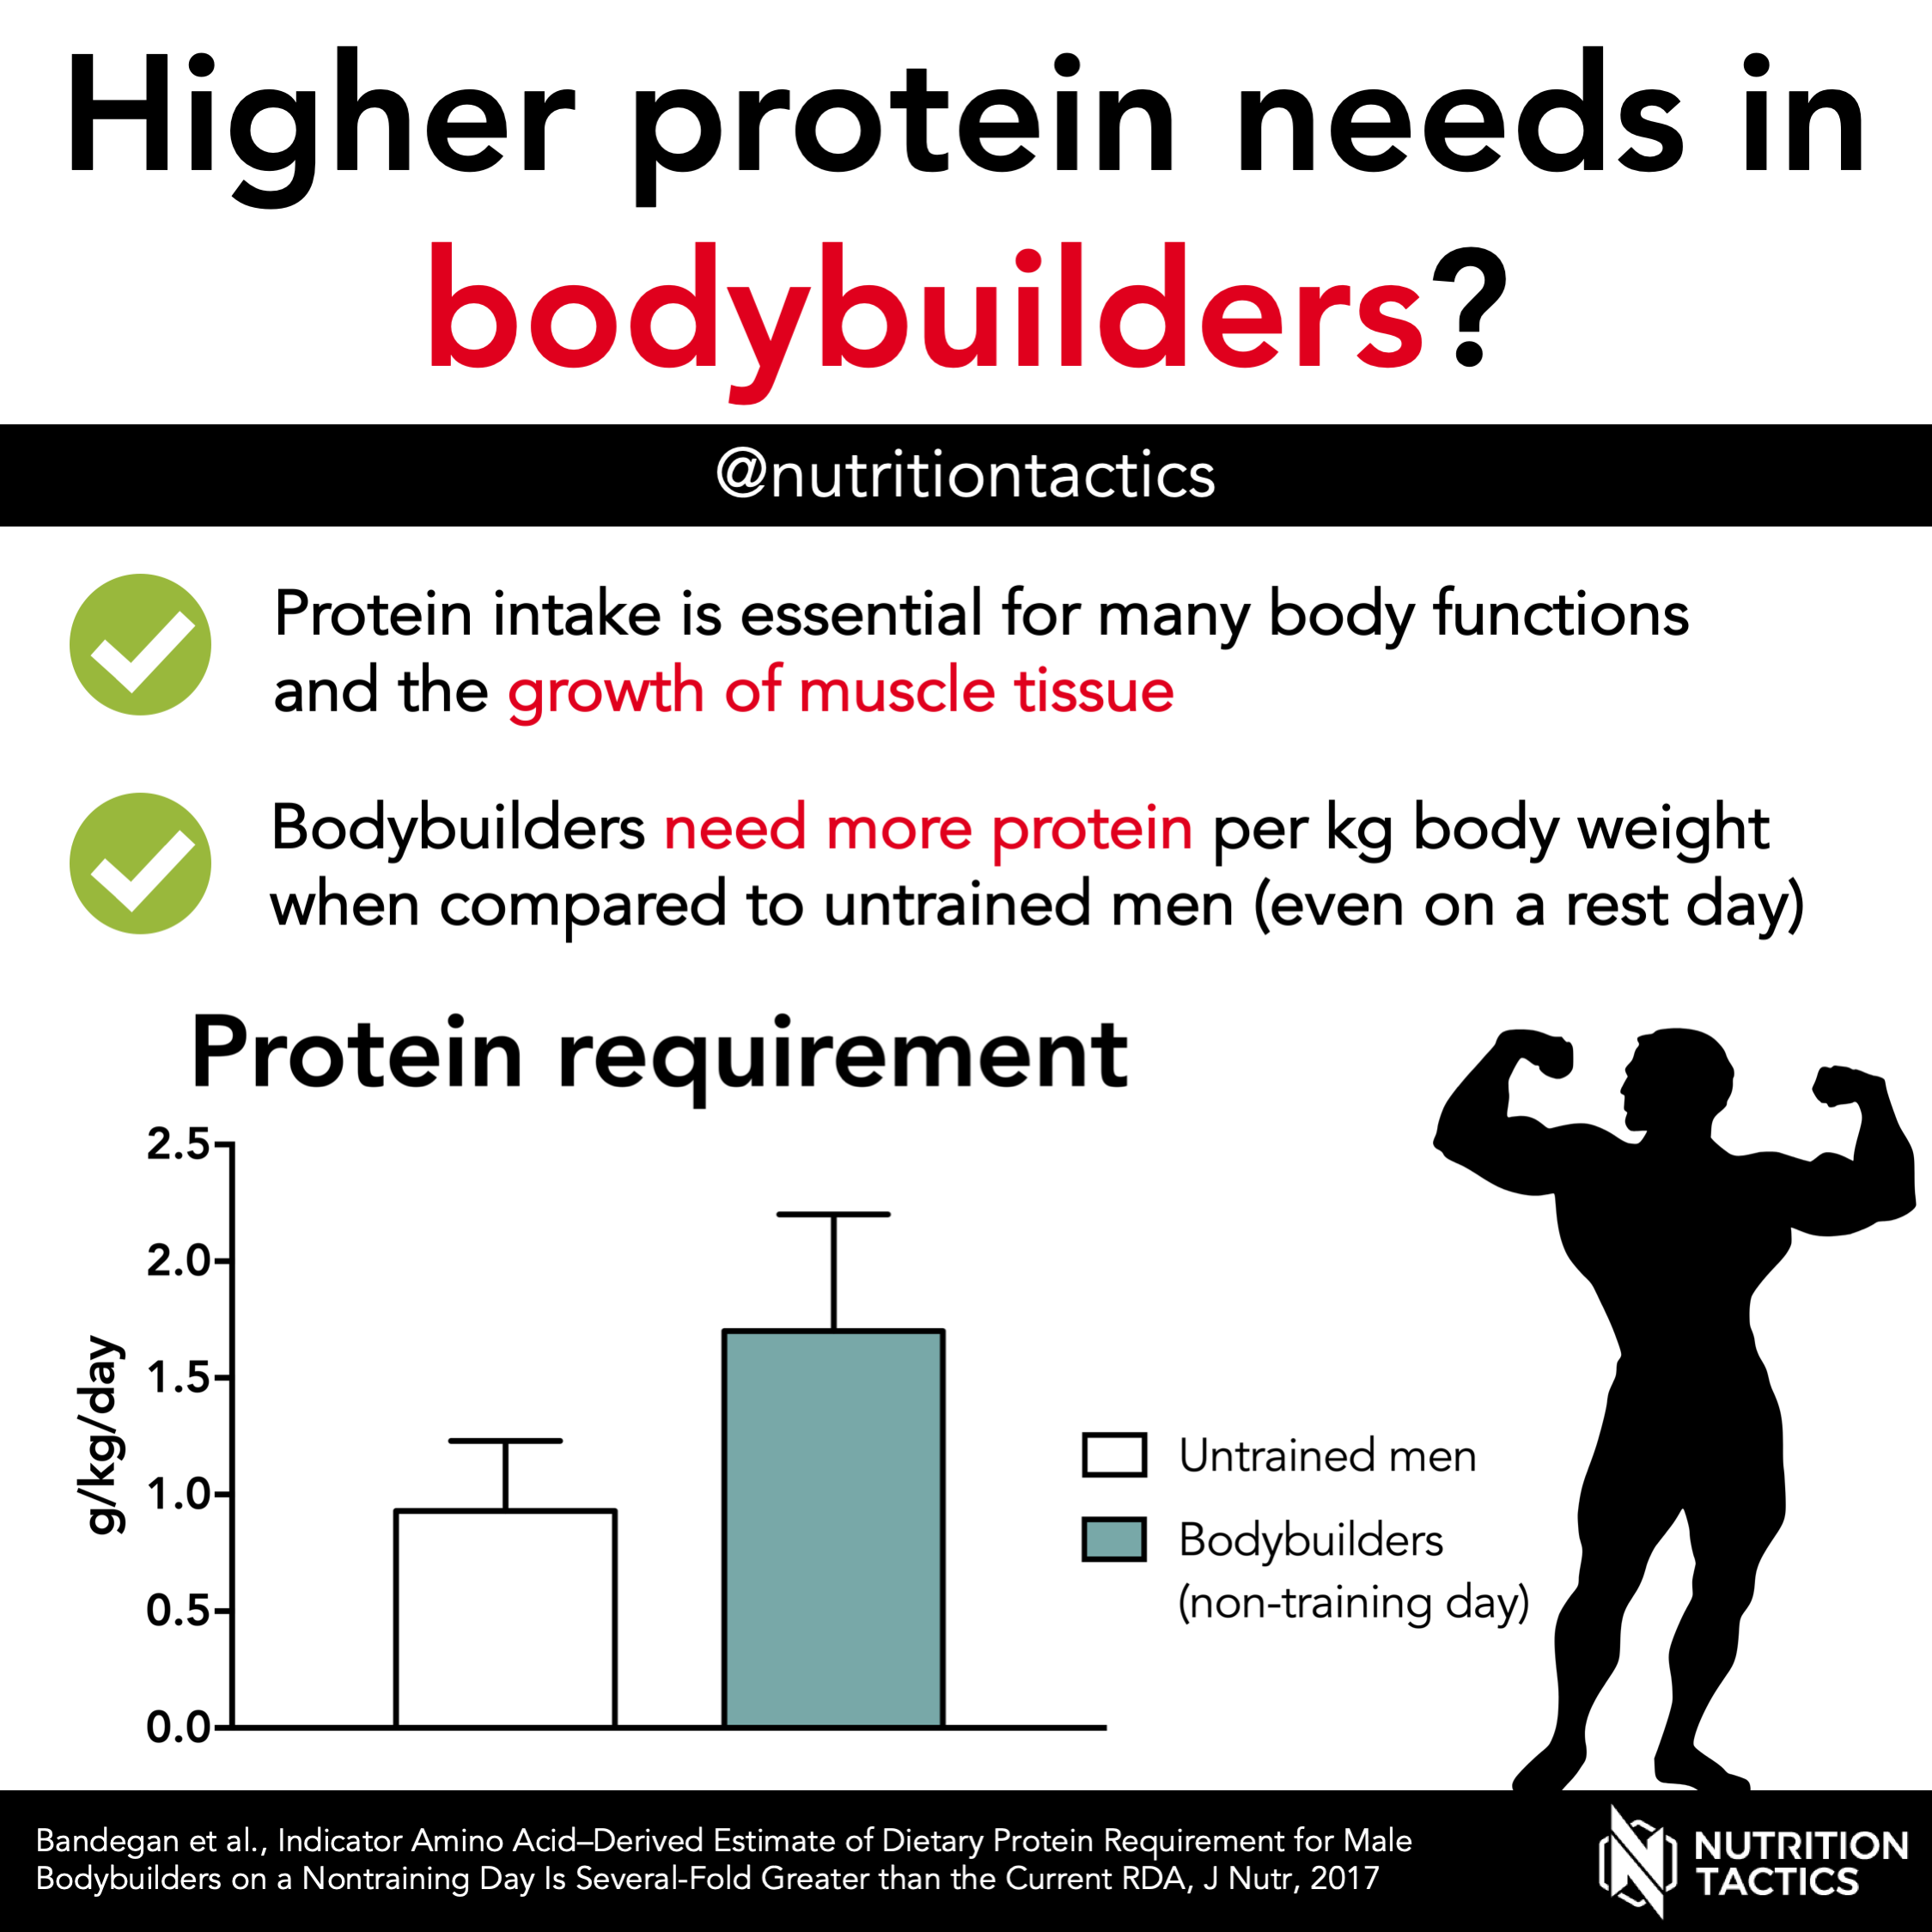 Higher protein needs in bodybuilders?